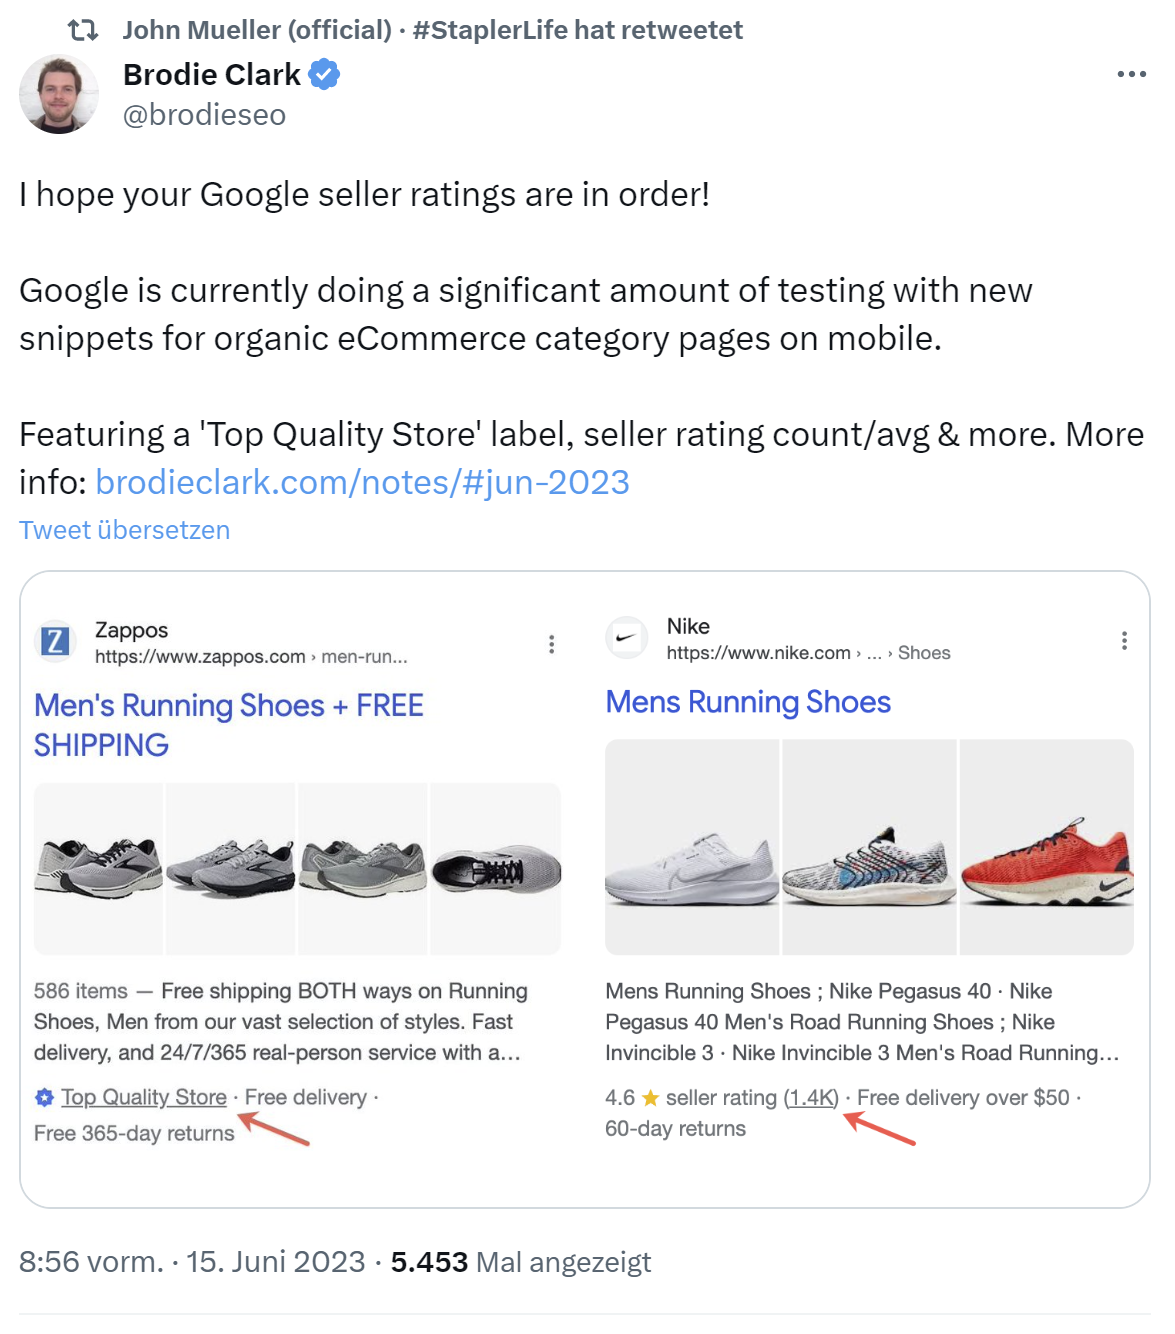 Google testet erweiterte Snippets für E-Commerce mit Seller Ratings - Brodie Clark auf Twitter